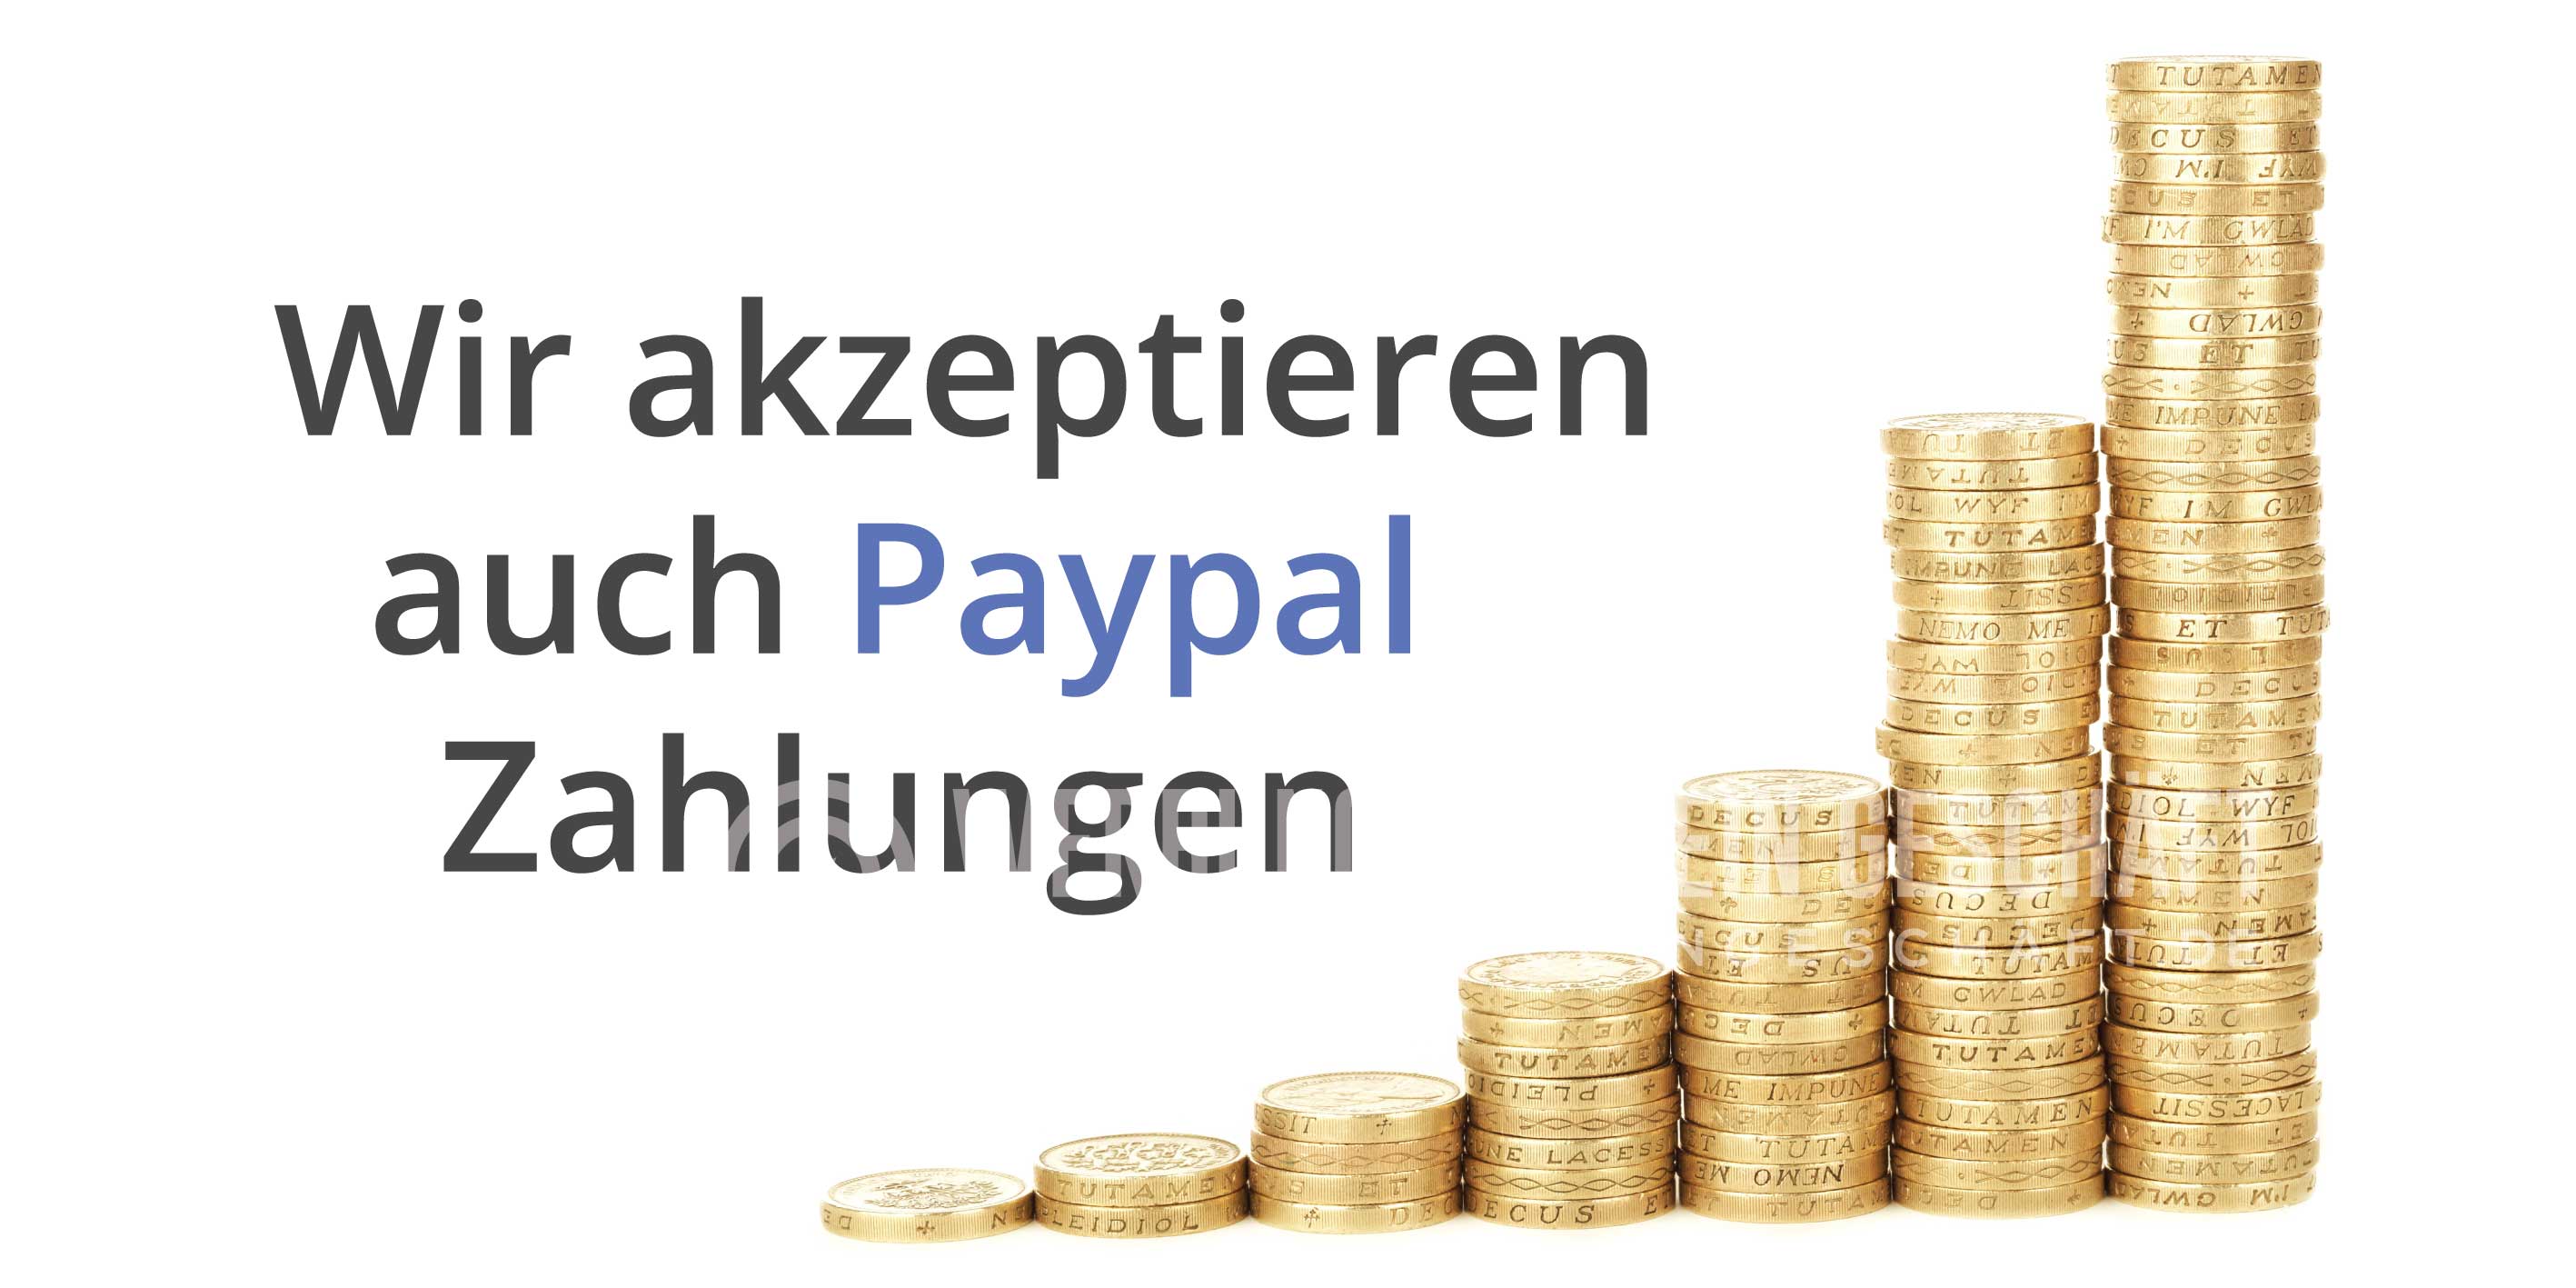 2:1 | Wir akzeptieren auch Paypal Poster | Plakat auch in DIN A 0 | 2 zu 1 Format